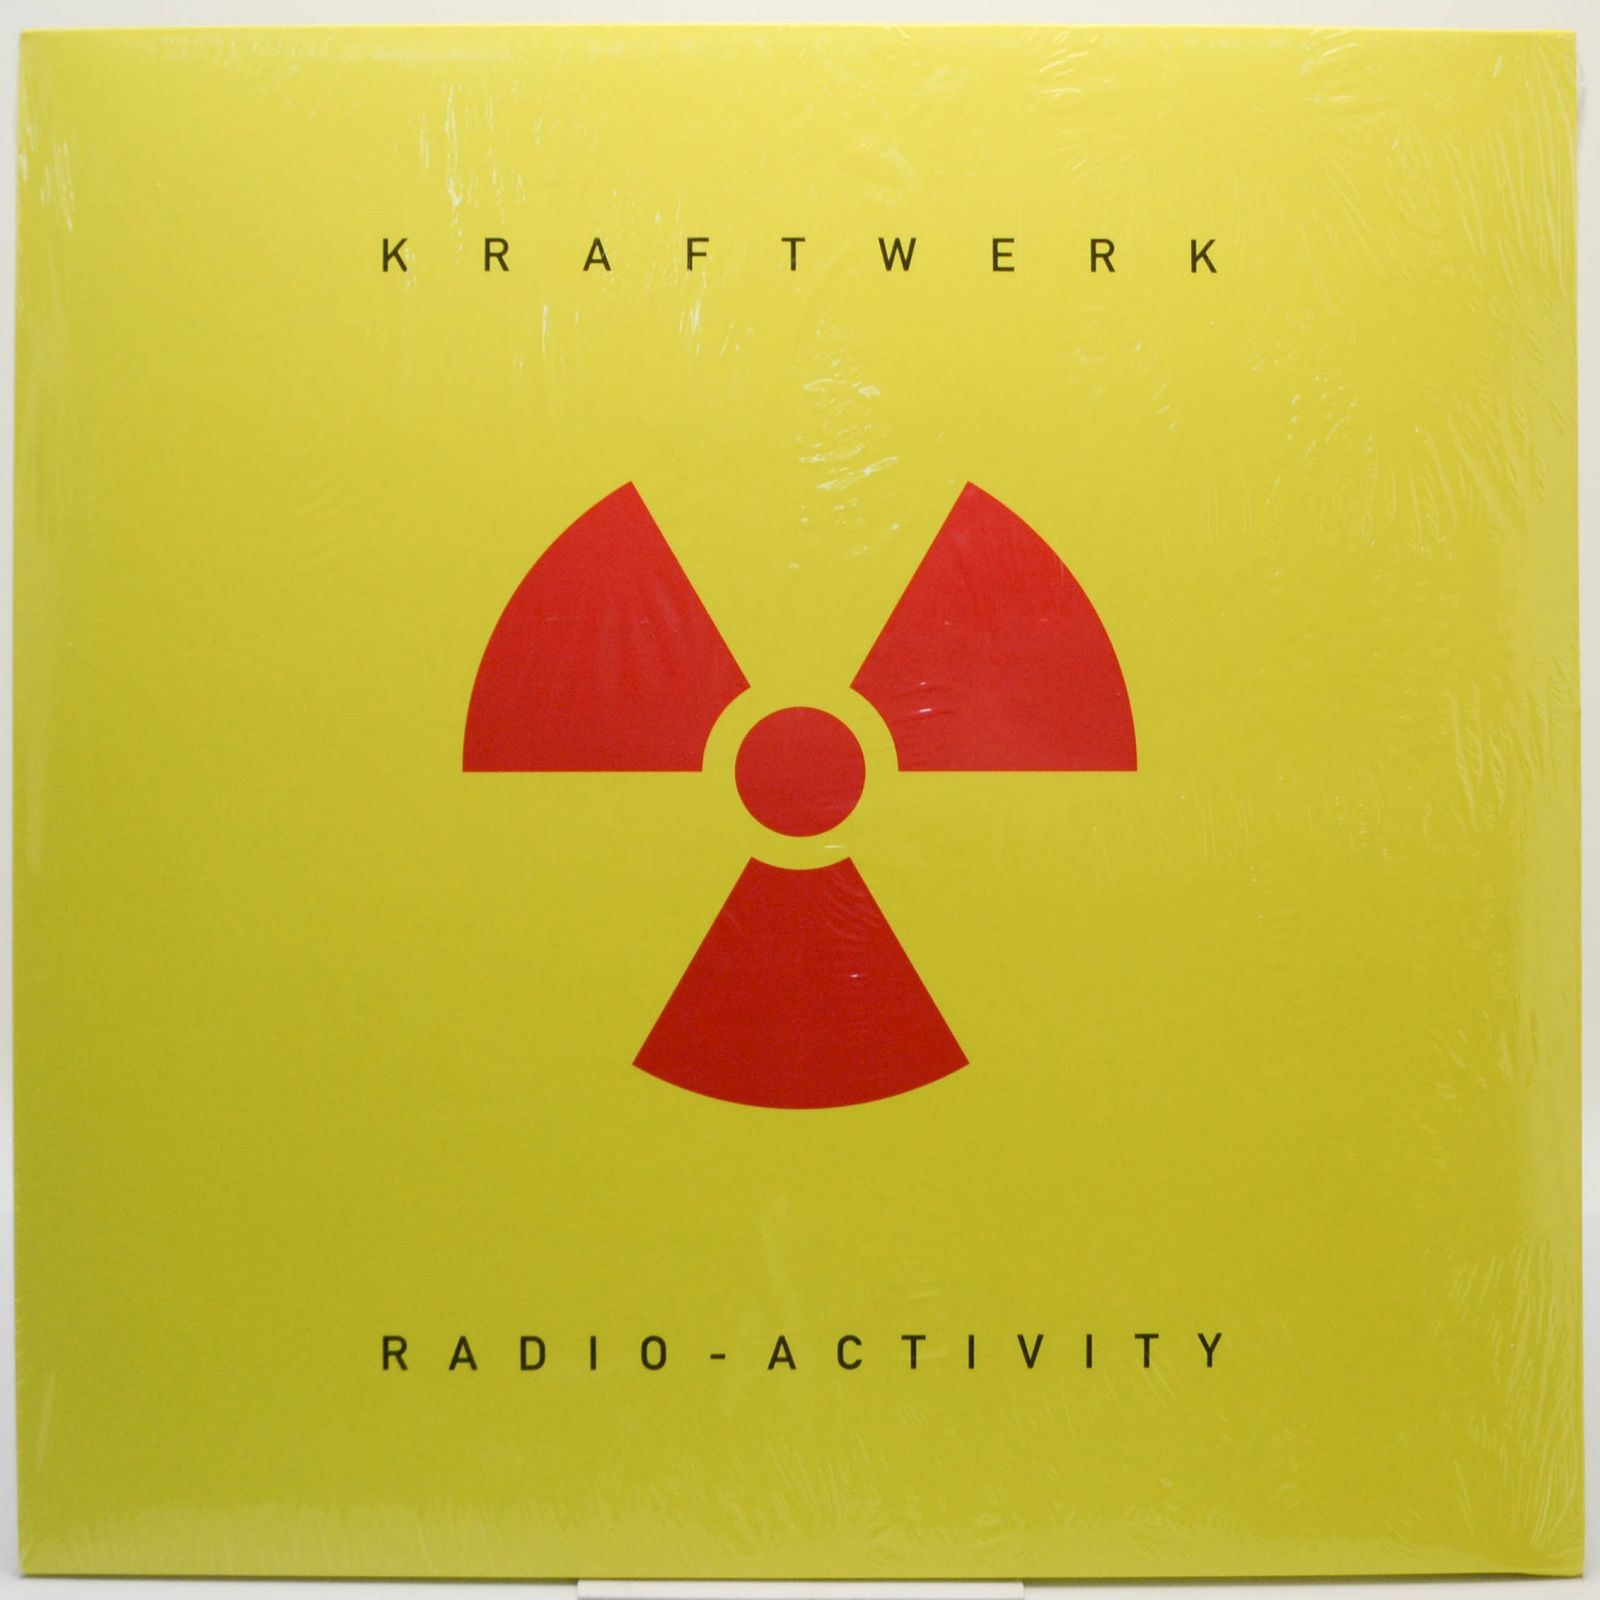 Radio-Activity, 1975